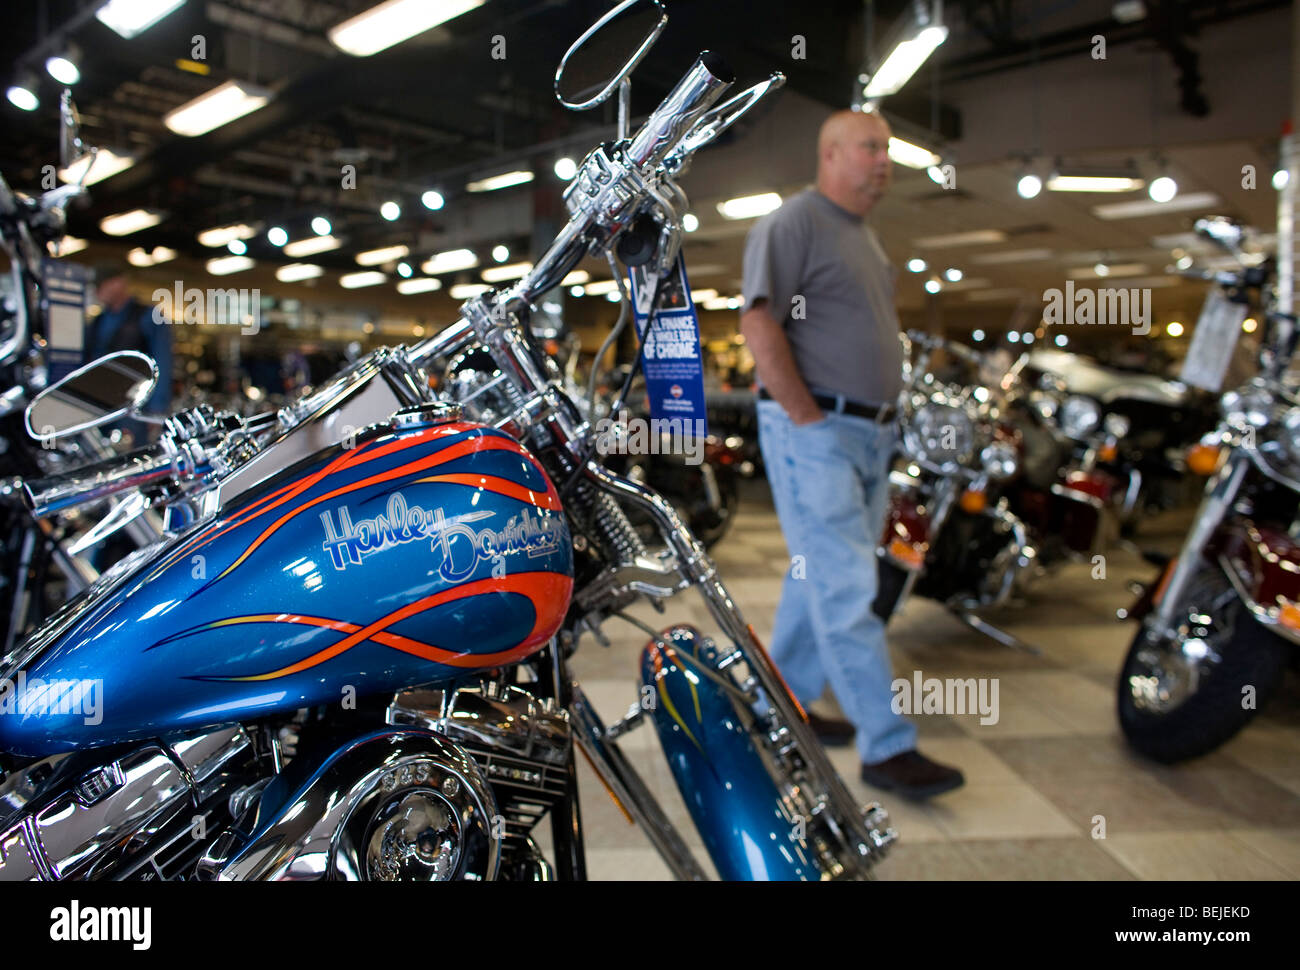 Harley-Davidson Motorcycles on display at a suburban Maryland dealership.  Stock Photo